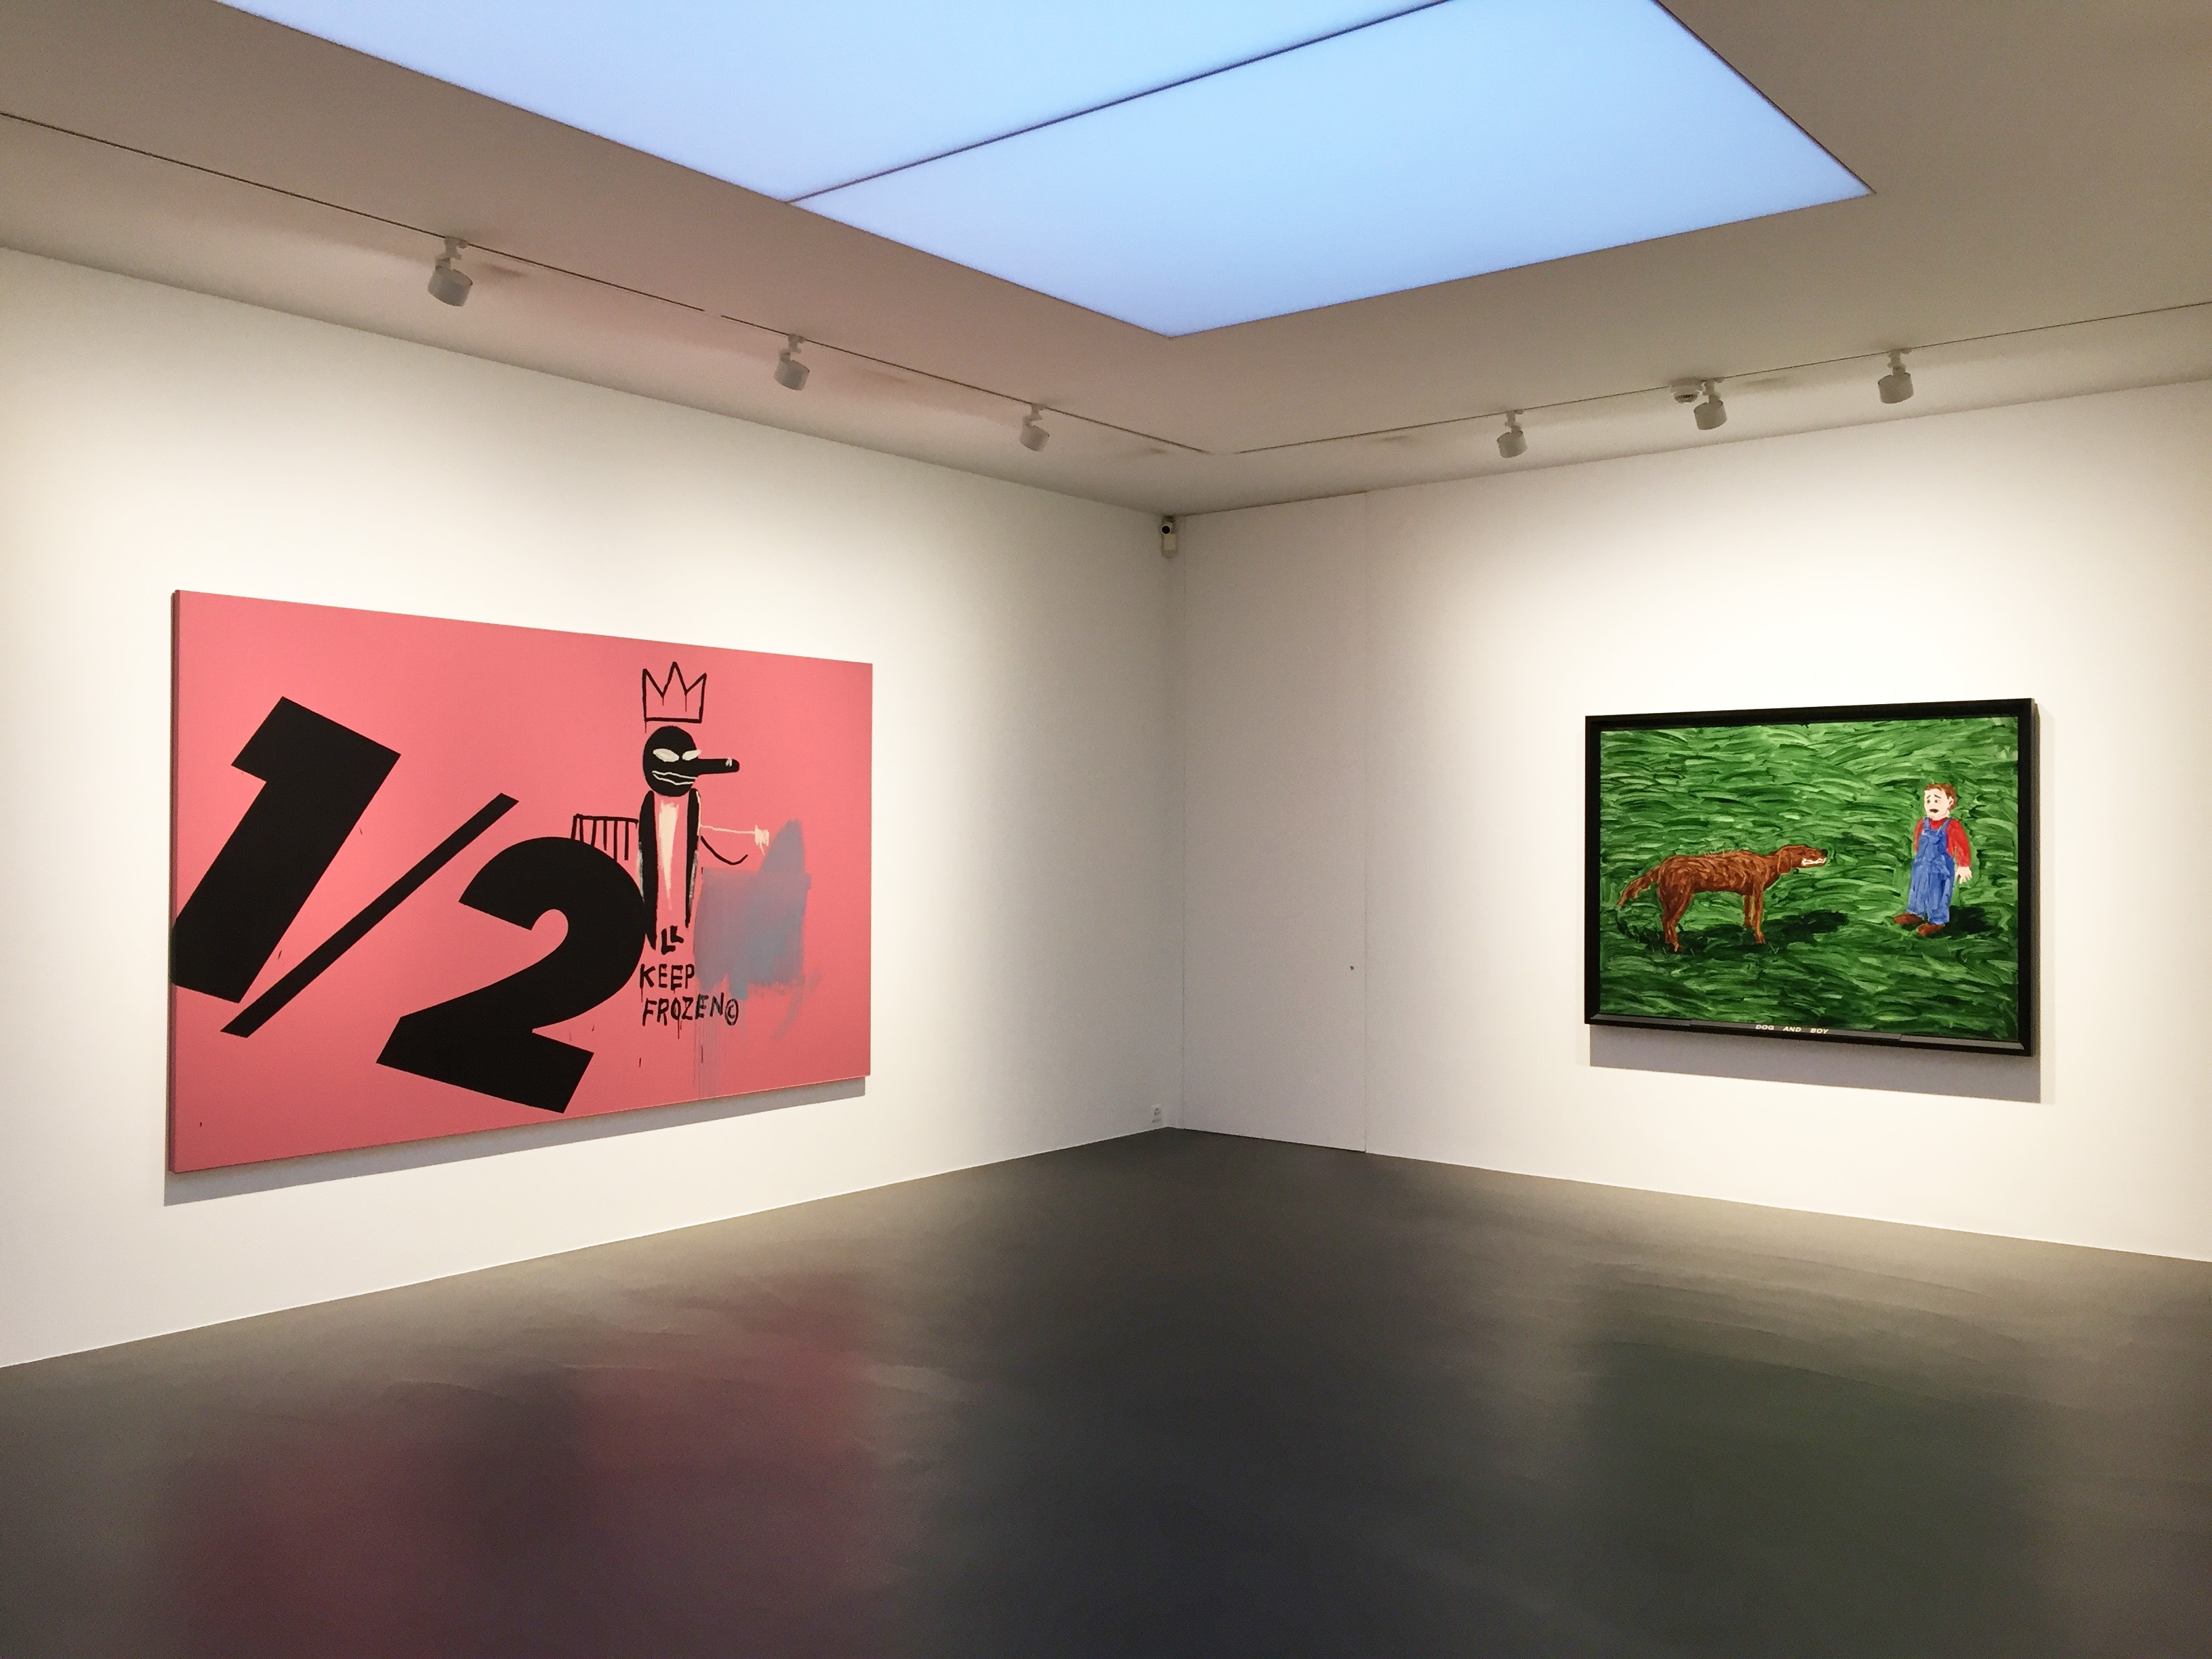 Jean Michel Basquiat & Andy Warhol, *1/2 Keep Frozen*, 1984-1985 and Neil Jenney, *Dog and Boy*, 1969. 
Courtesy Tobias Mueller Modern Art, Zurich